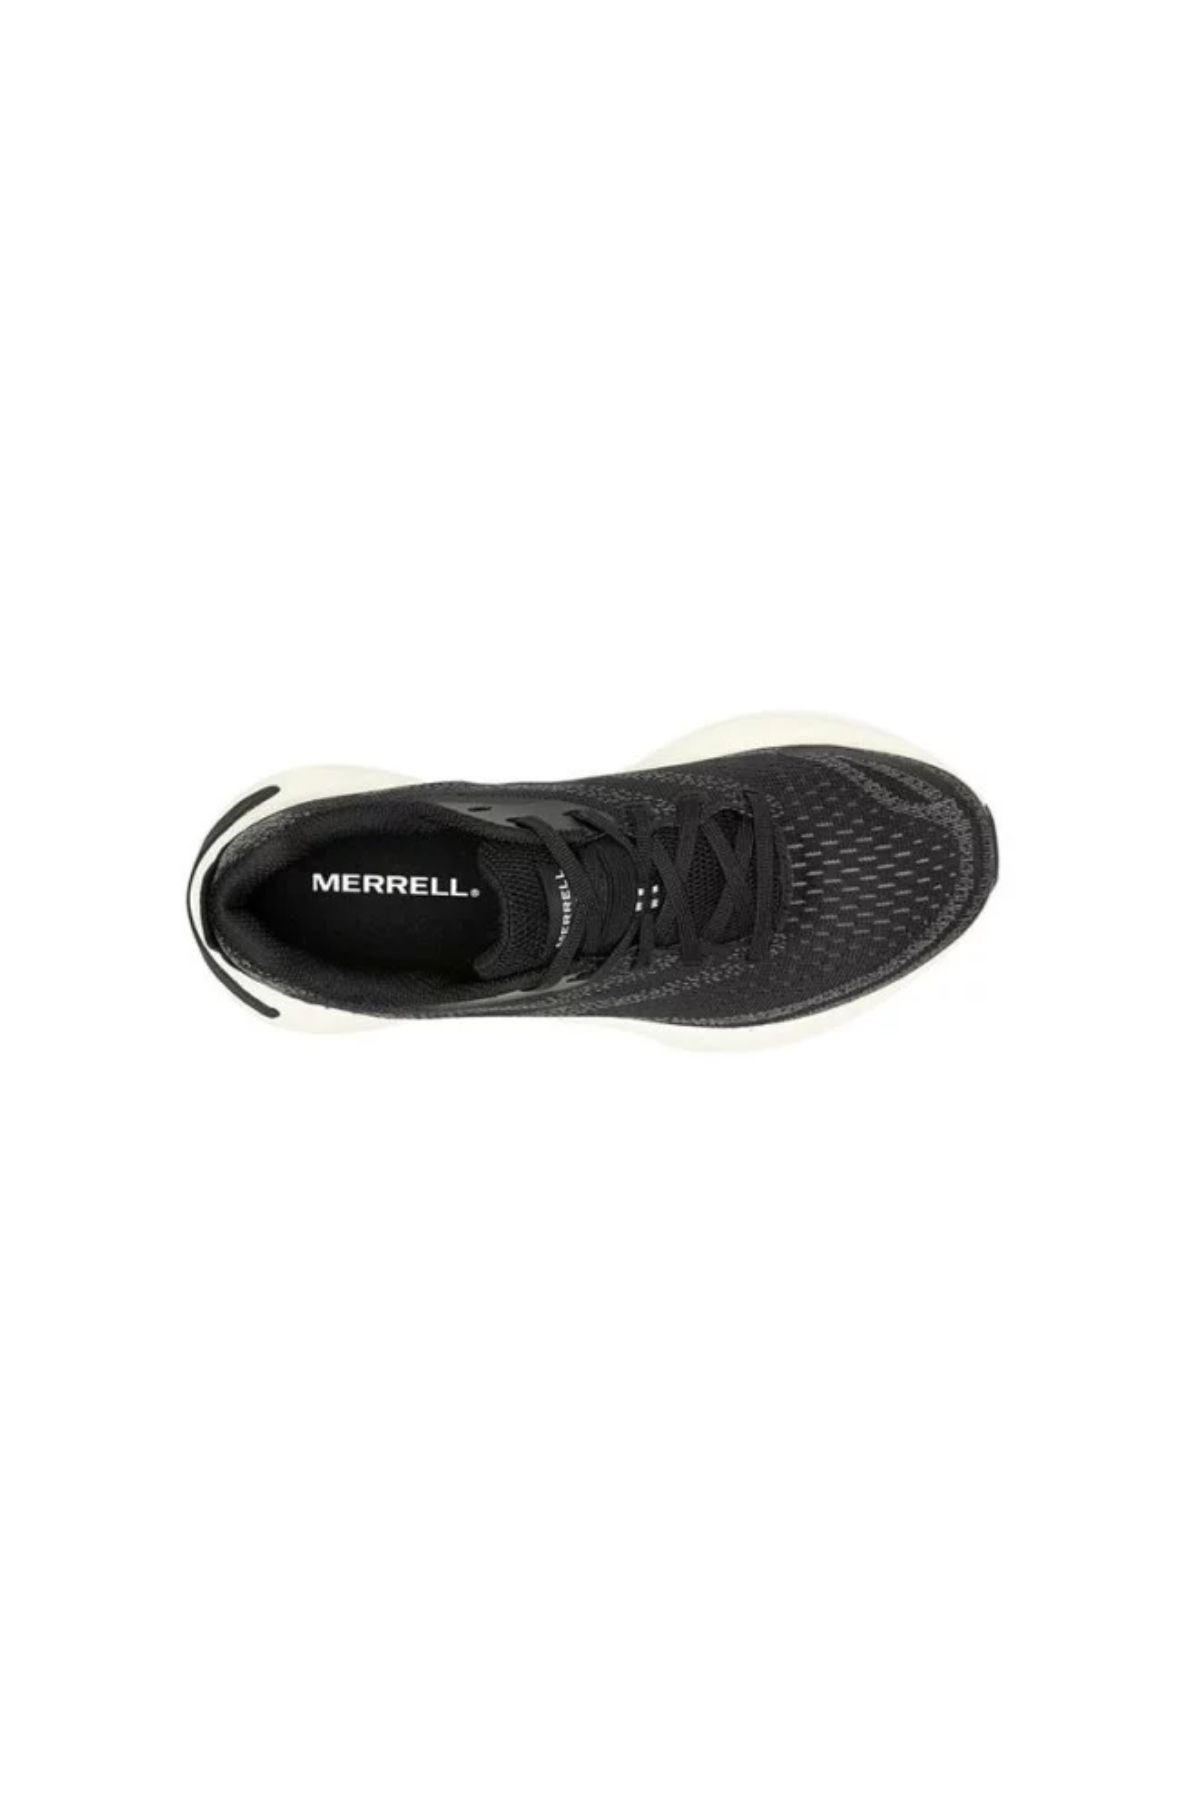 Merrell Kadın Morphlıte Patika Koşusu Ayakkabısı Black/whıte J068132